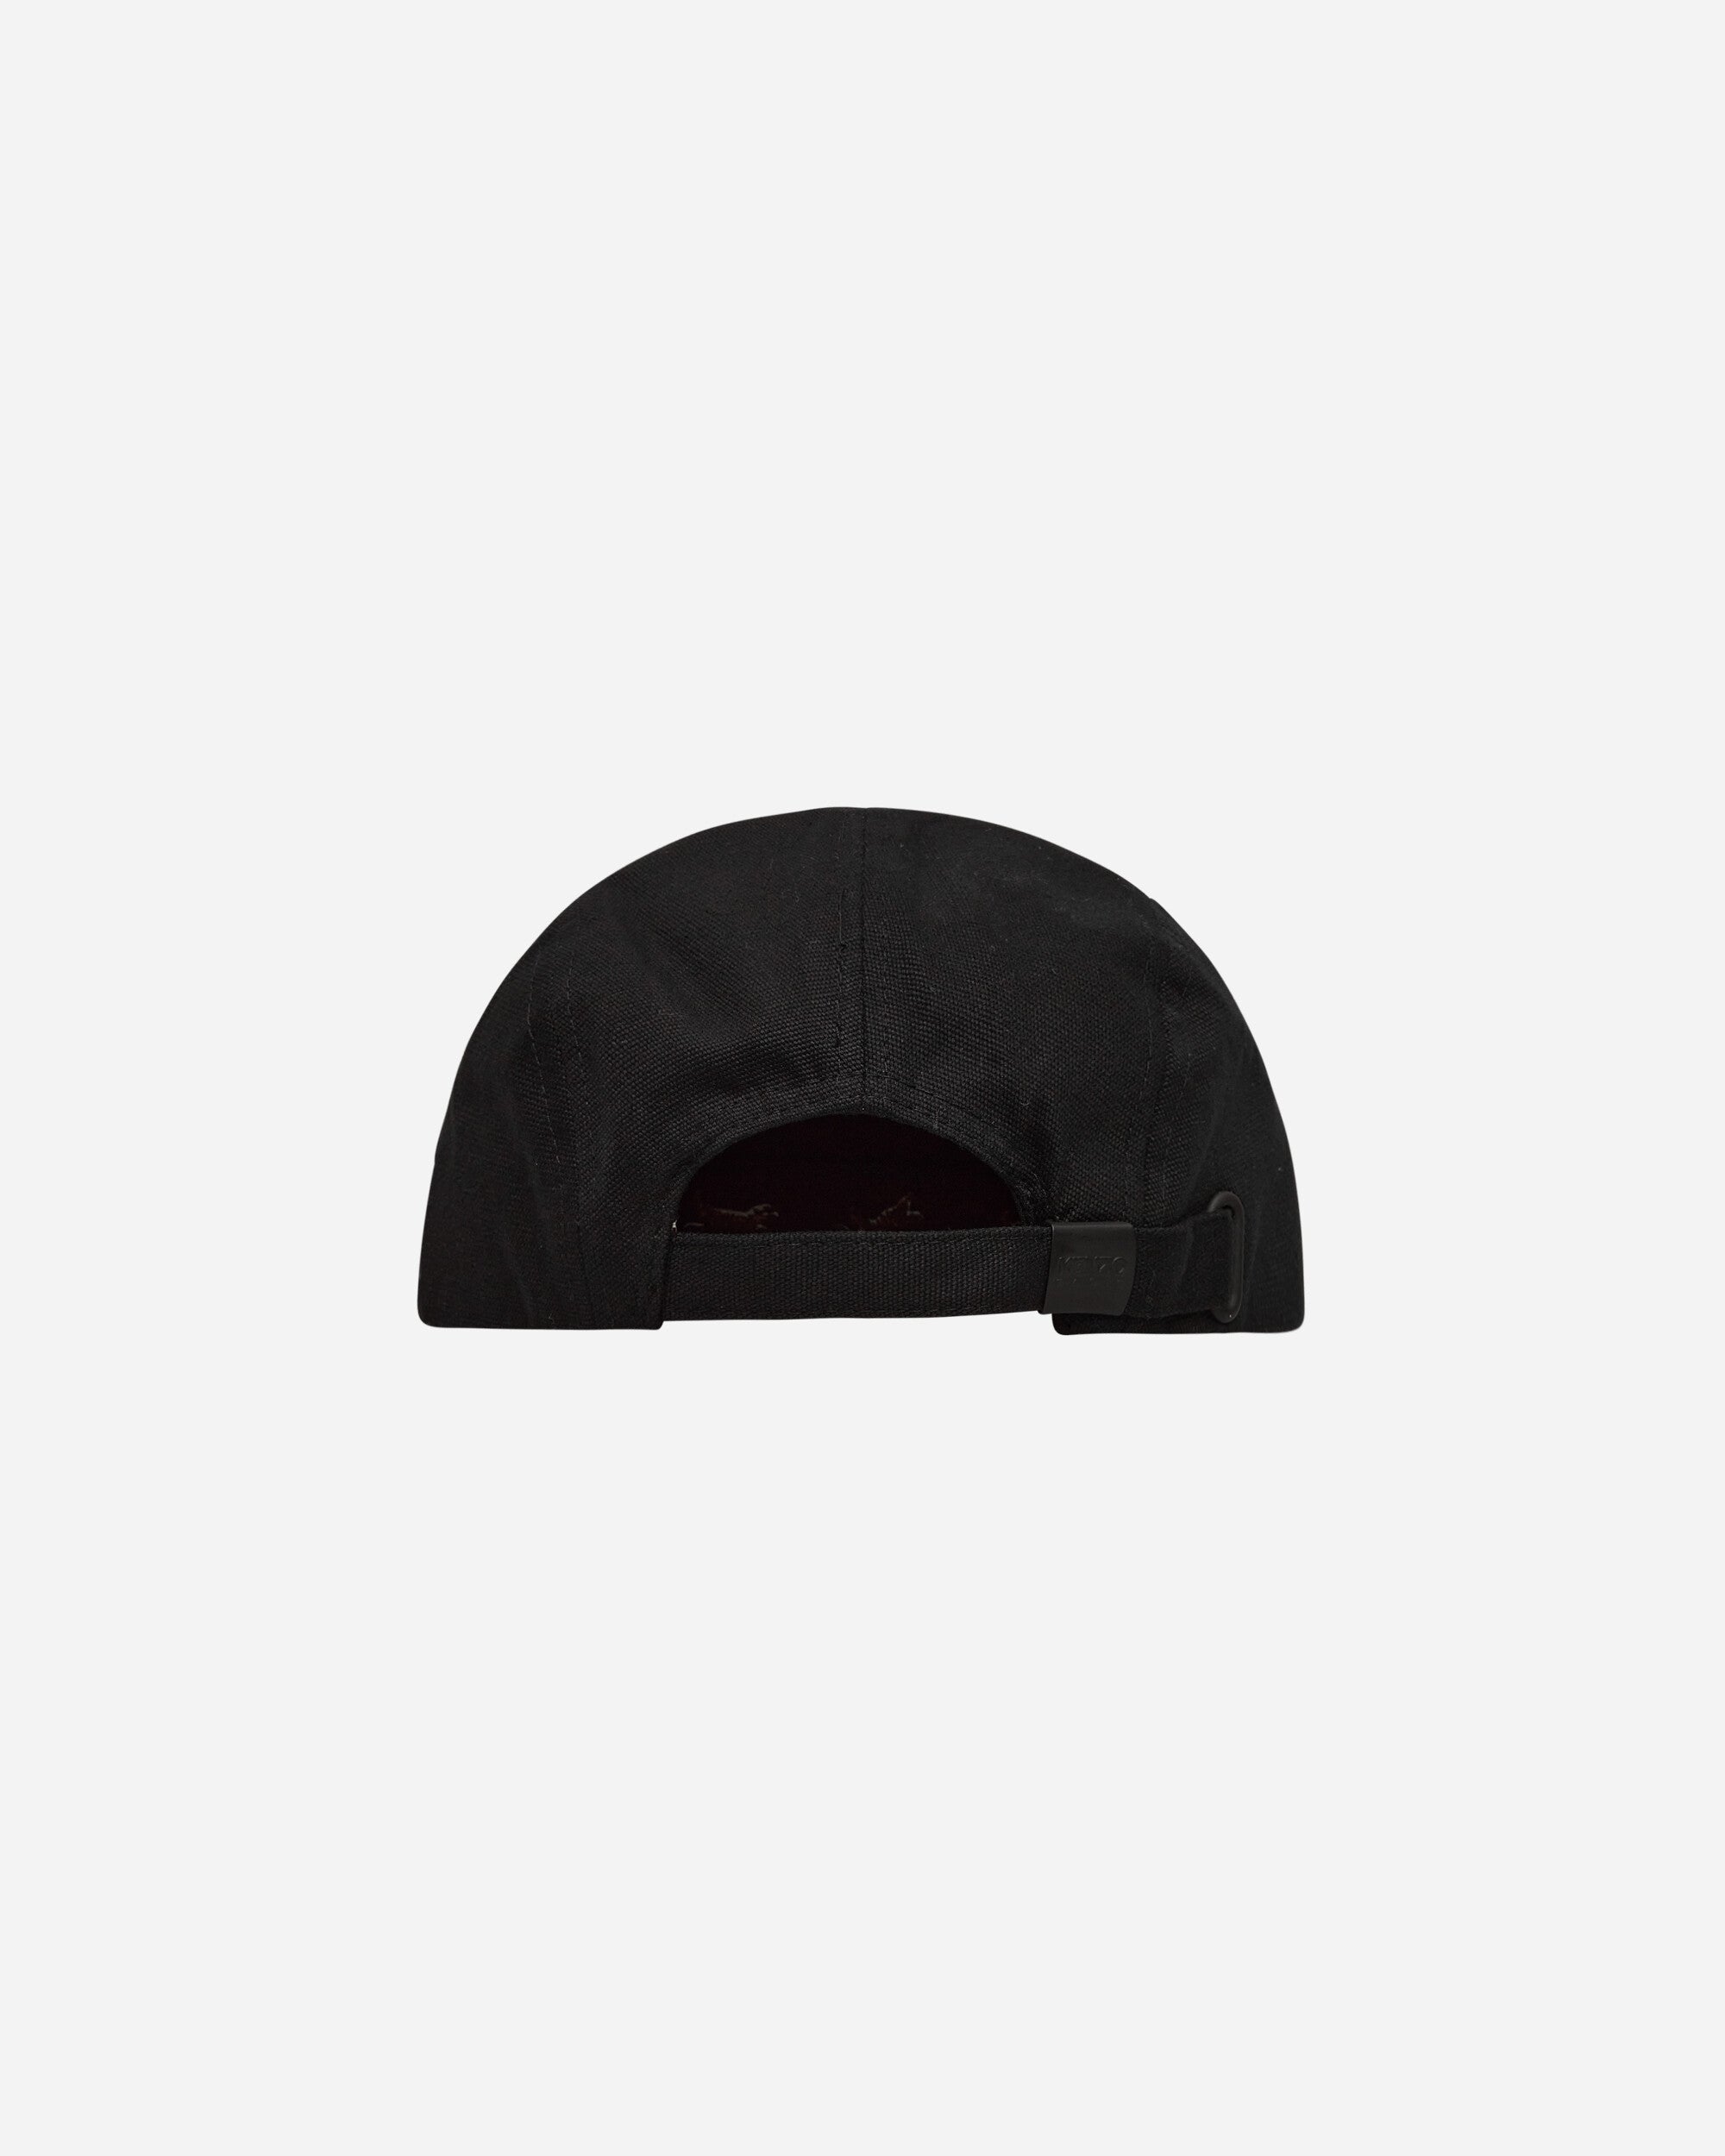 KENZO Paris Cap Black Hats Caps FC65AC401F33 99